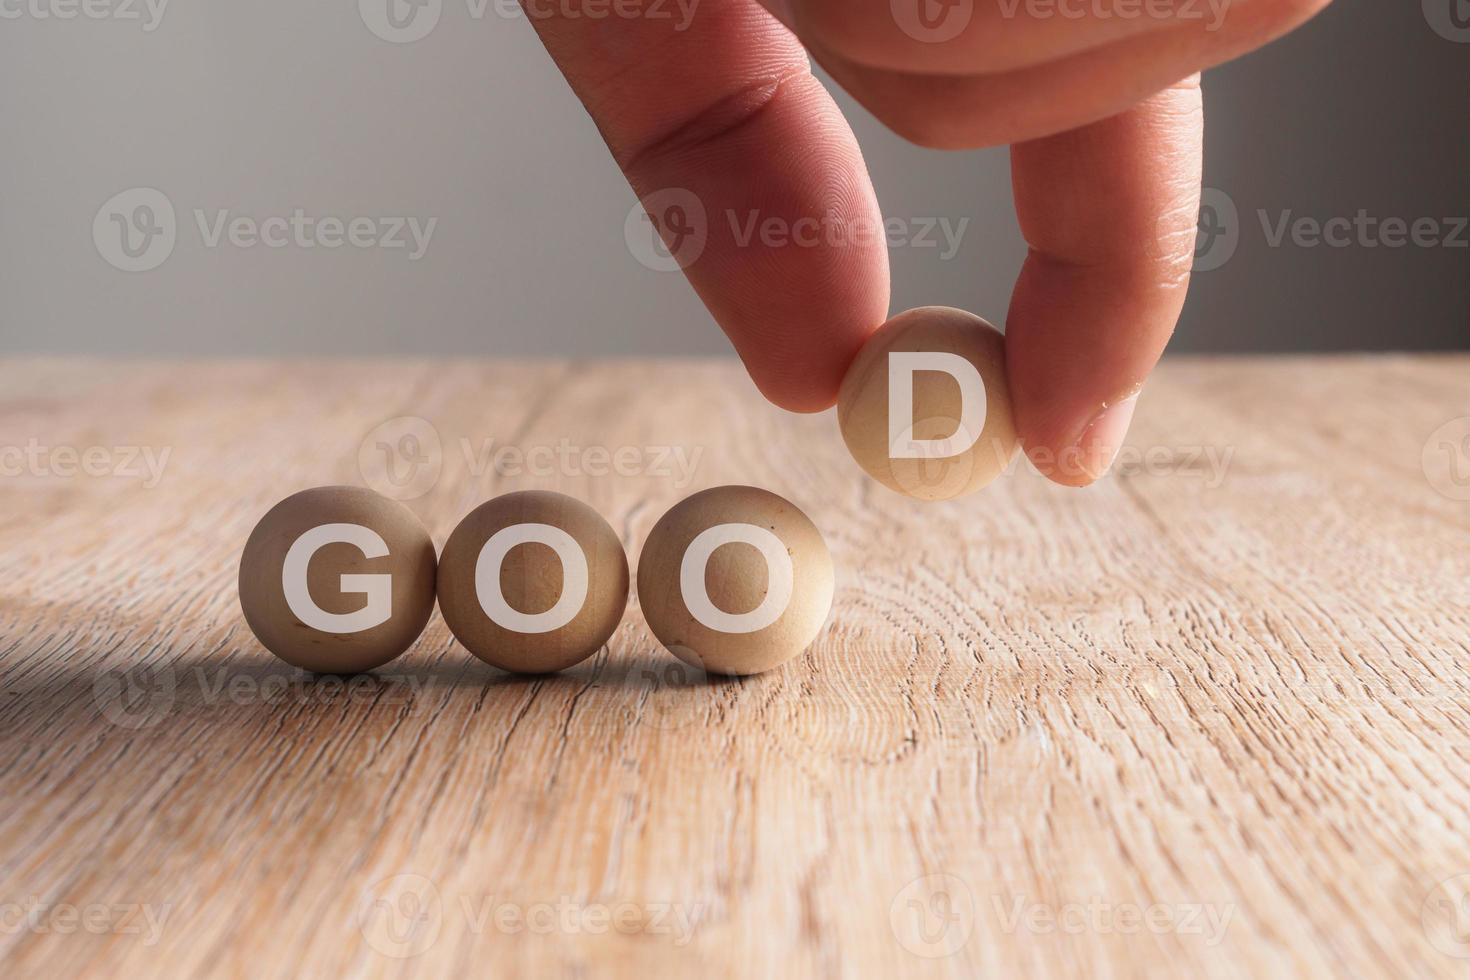 mão colocando boa palavra escrita em bola de madeira foto